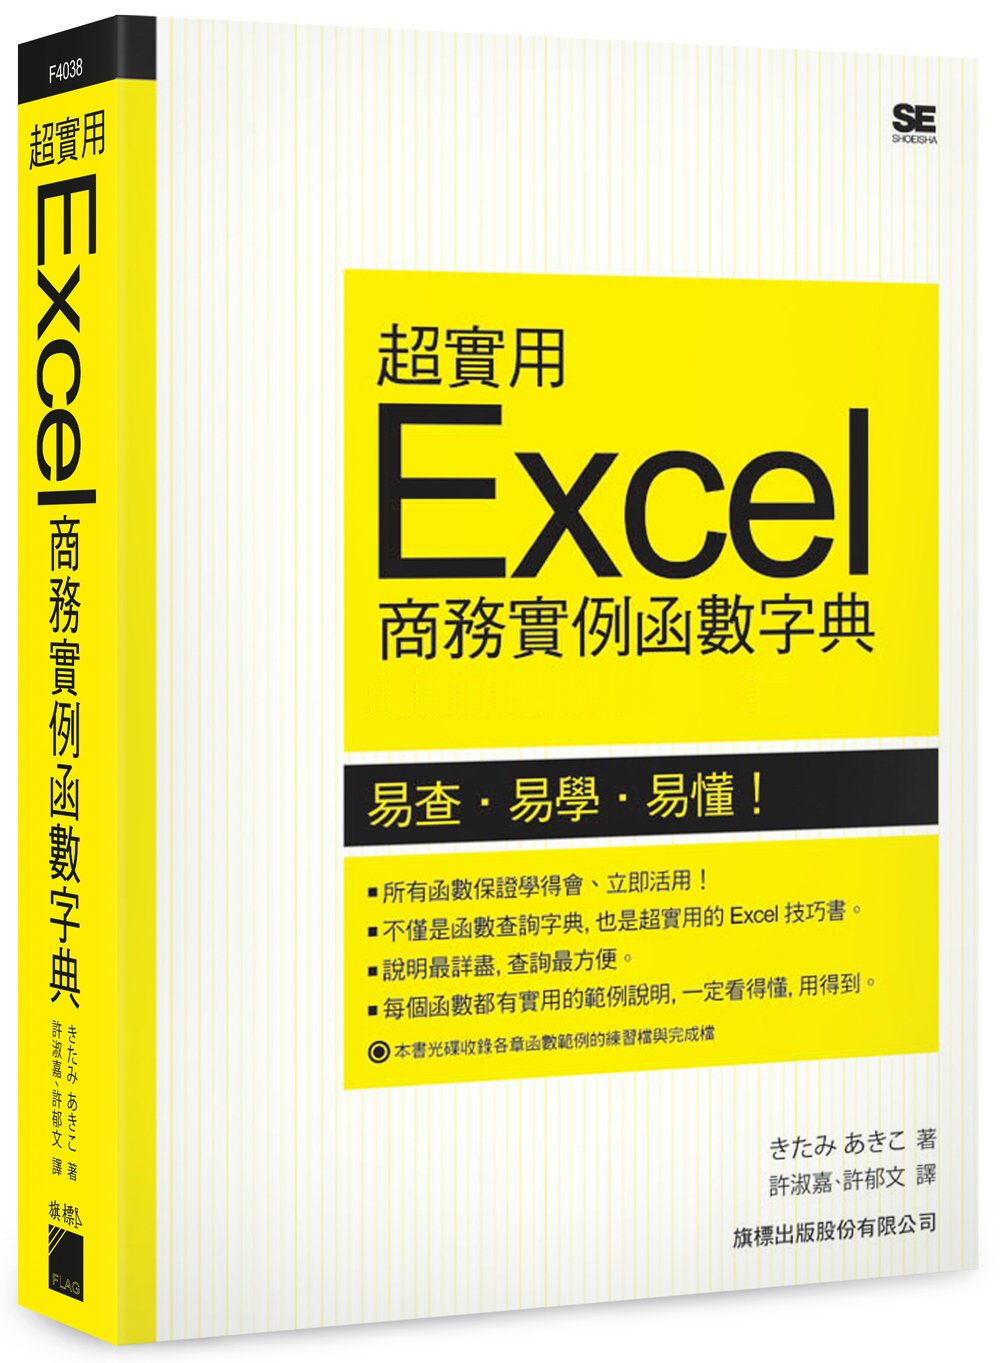 超實用 Excel 商務實例函數字典